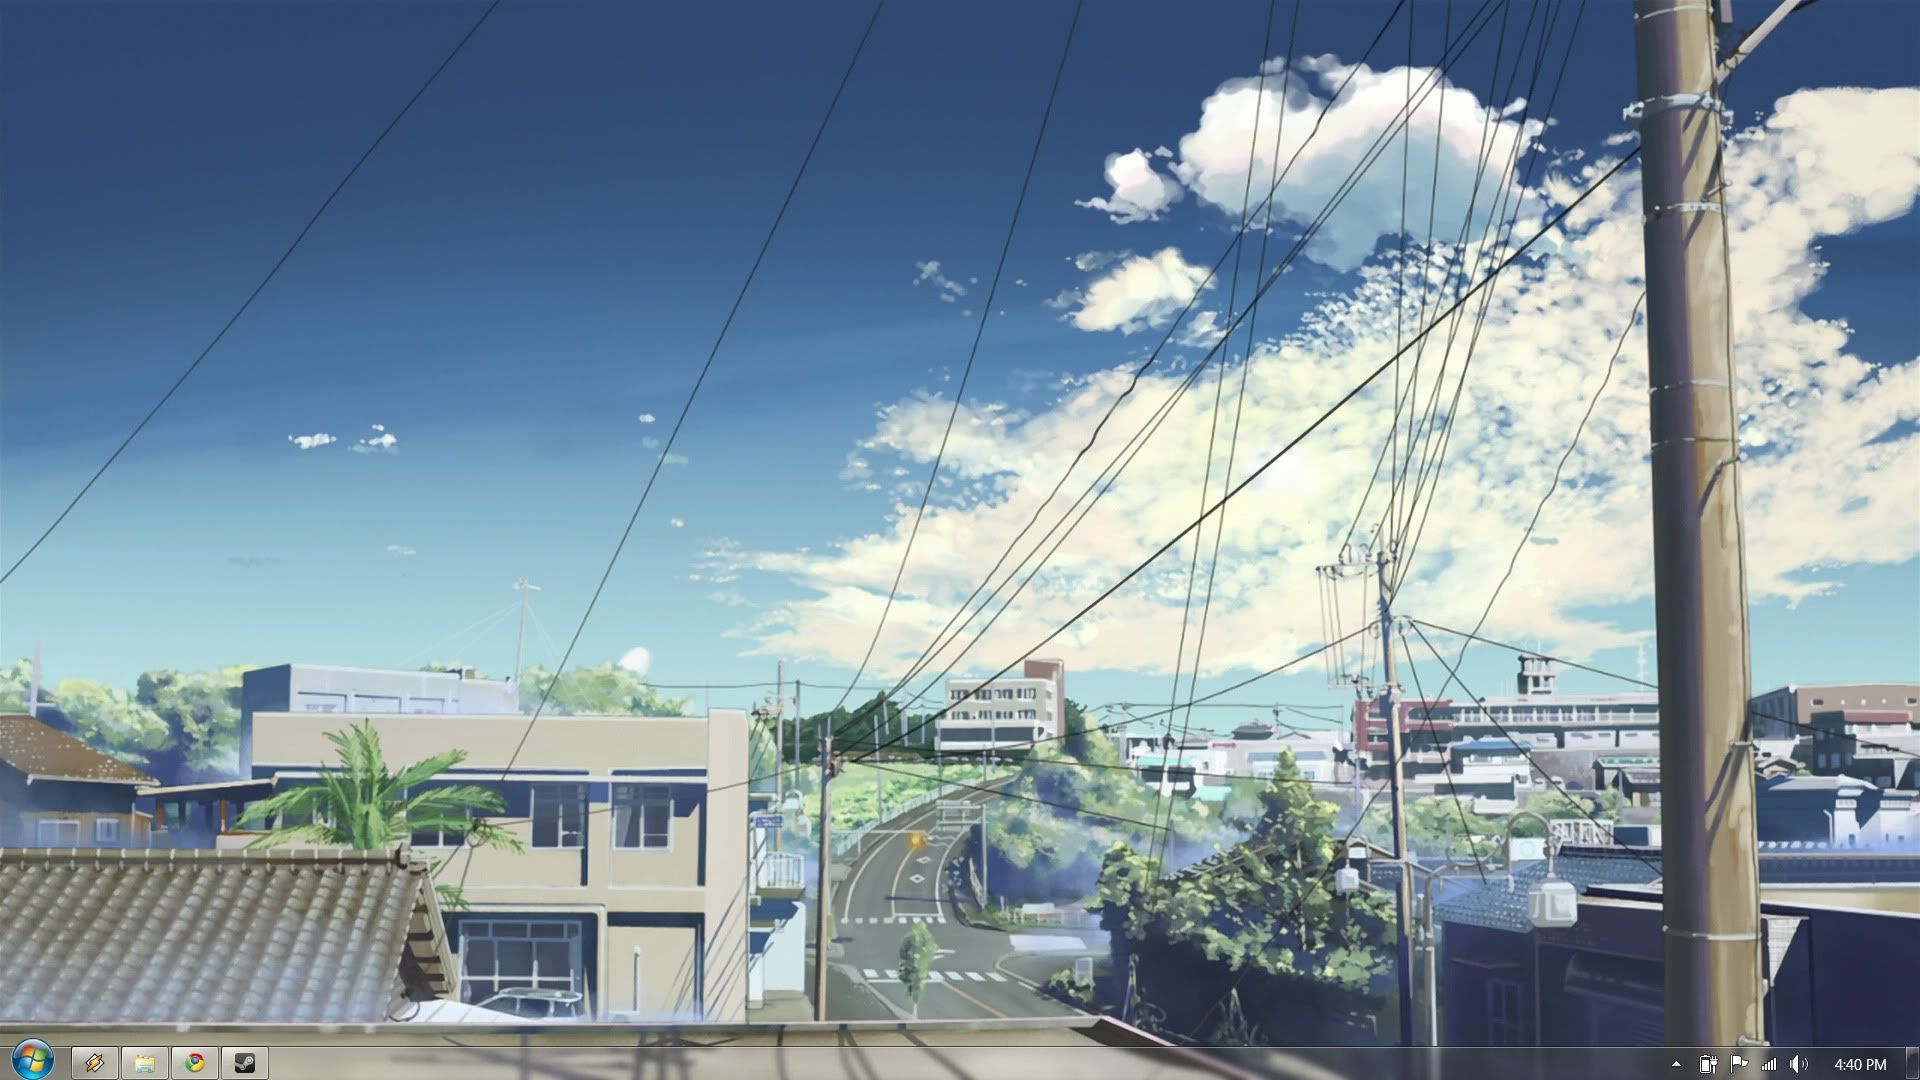 Anime Aesthetic Wallpaper Desktop